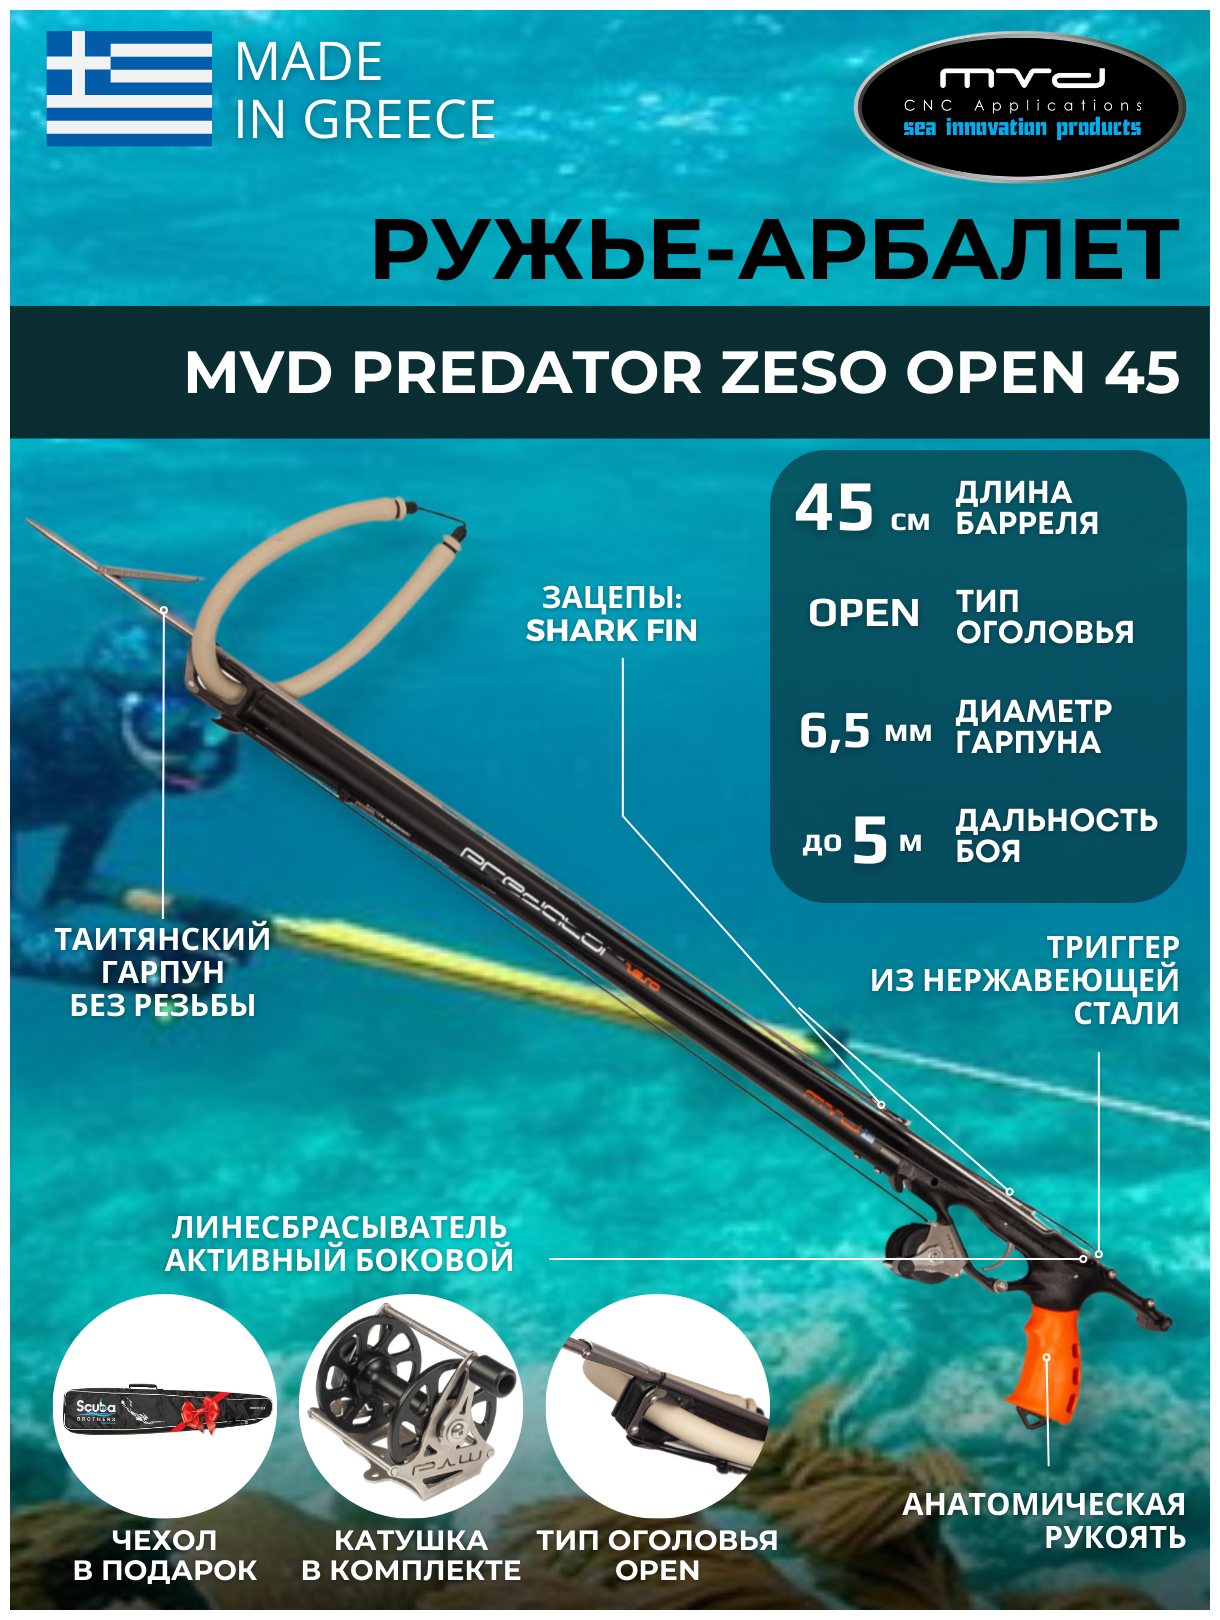 Ружье-арбалет MVD PREDATOR ZESO OPEN 45 см, с катушкой, полный комплект